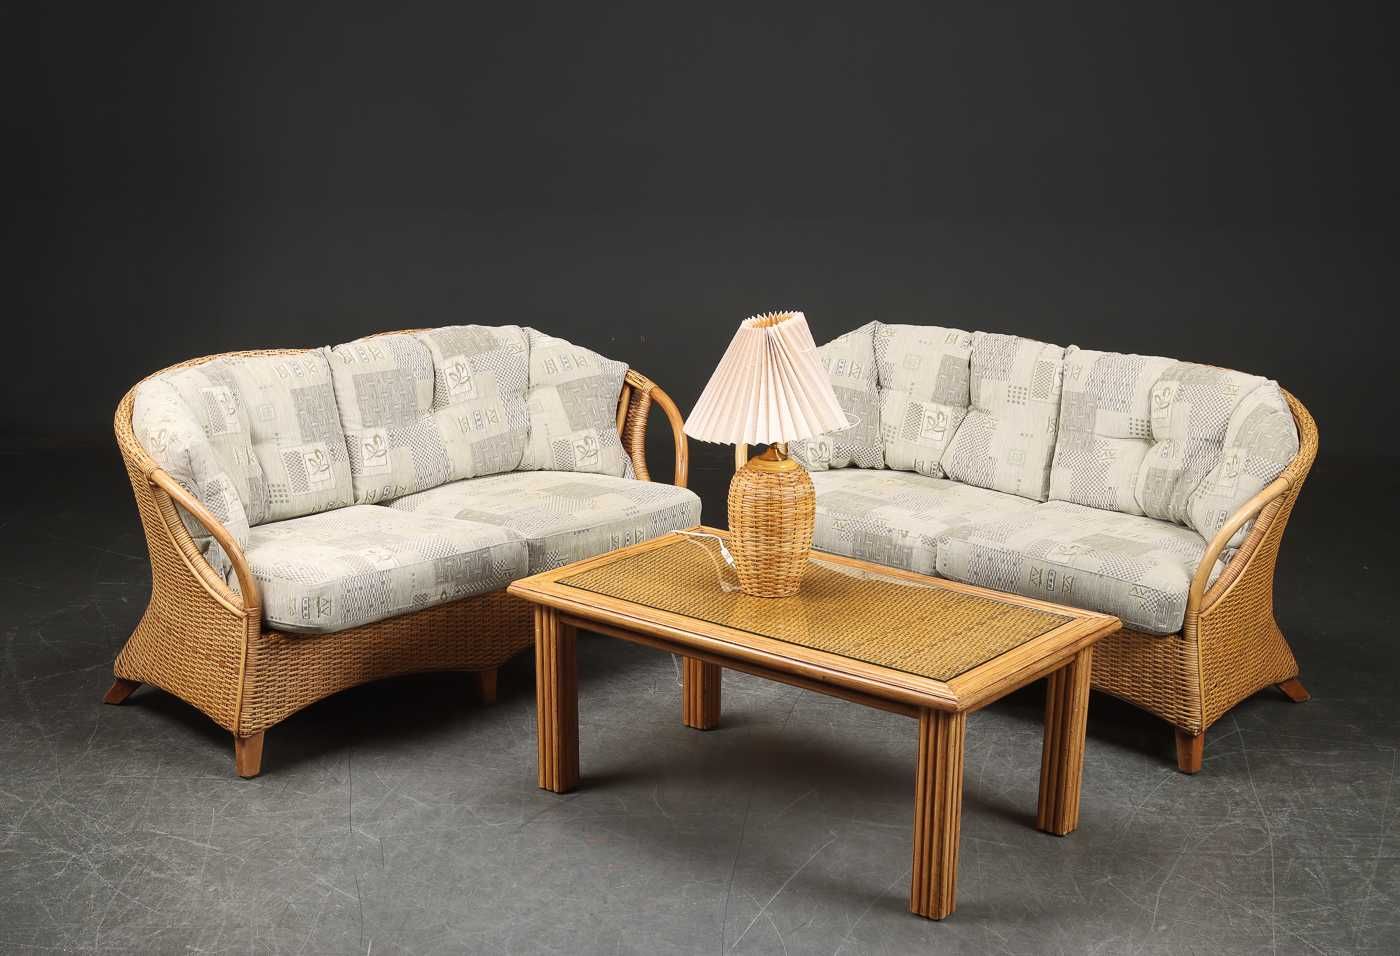 комплект или отдельно из бамбука двухместный диван 2шт и столик Швеция